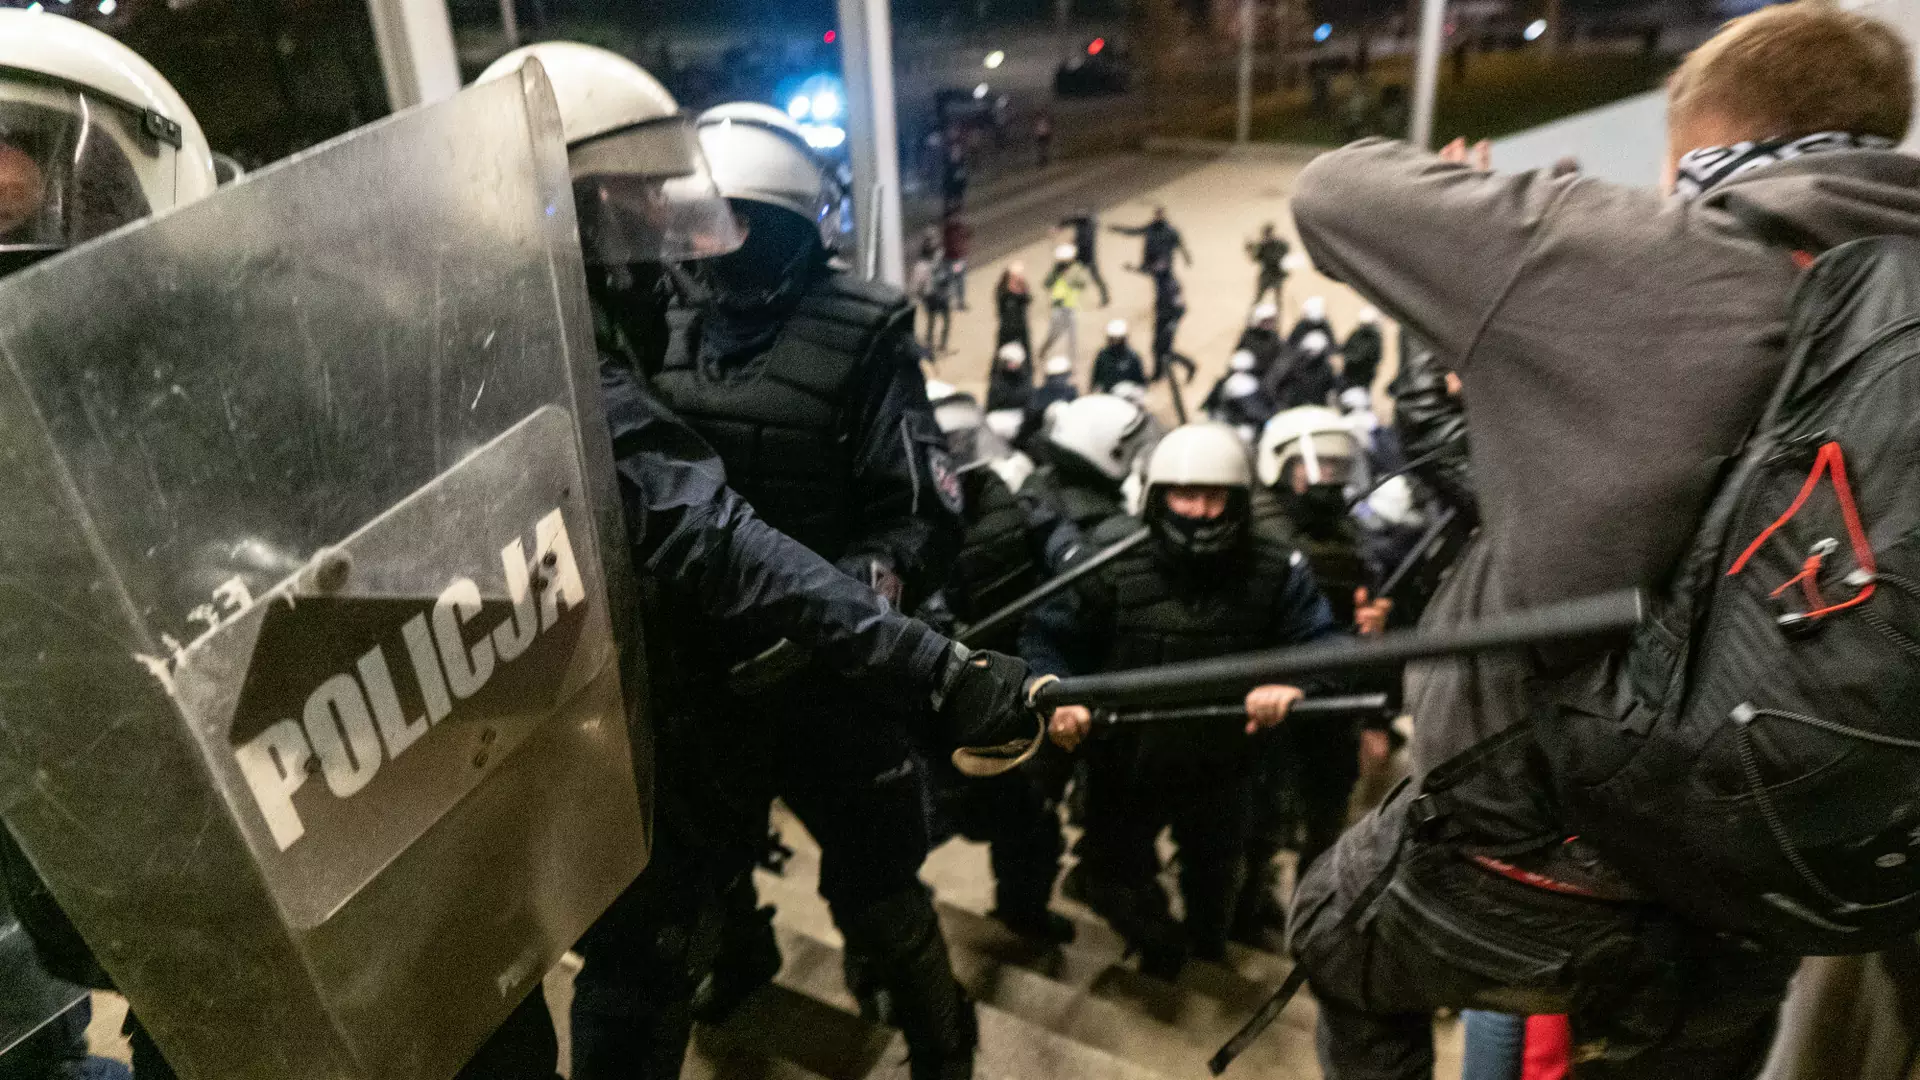 Rzecznik warszawskiej komendy przeprasza za użycie pałek i gazu wobec dziennikarzy